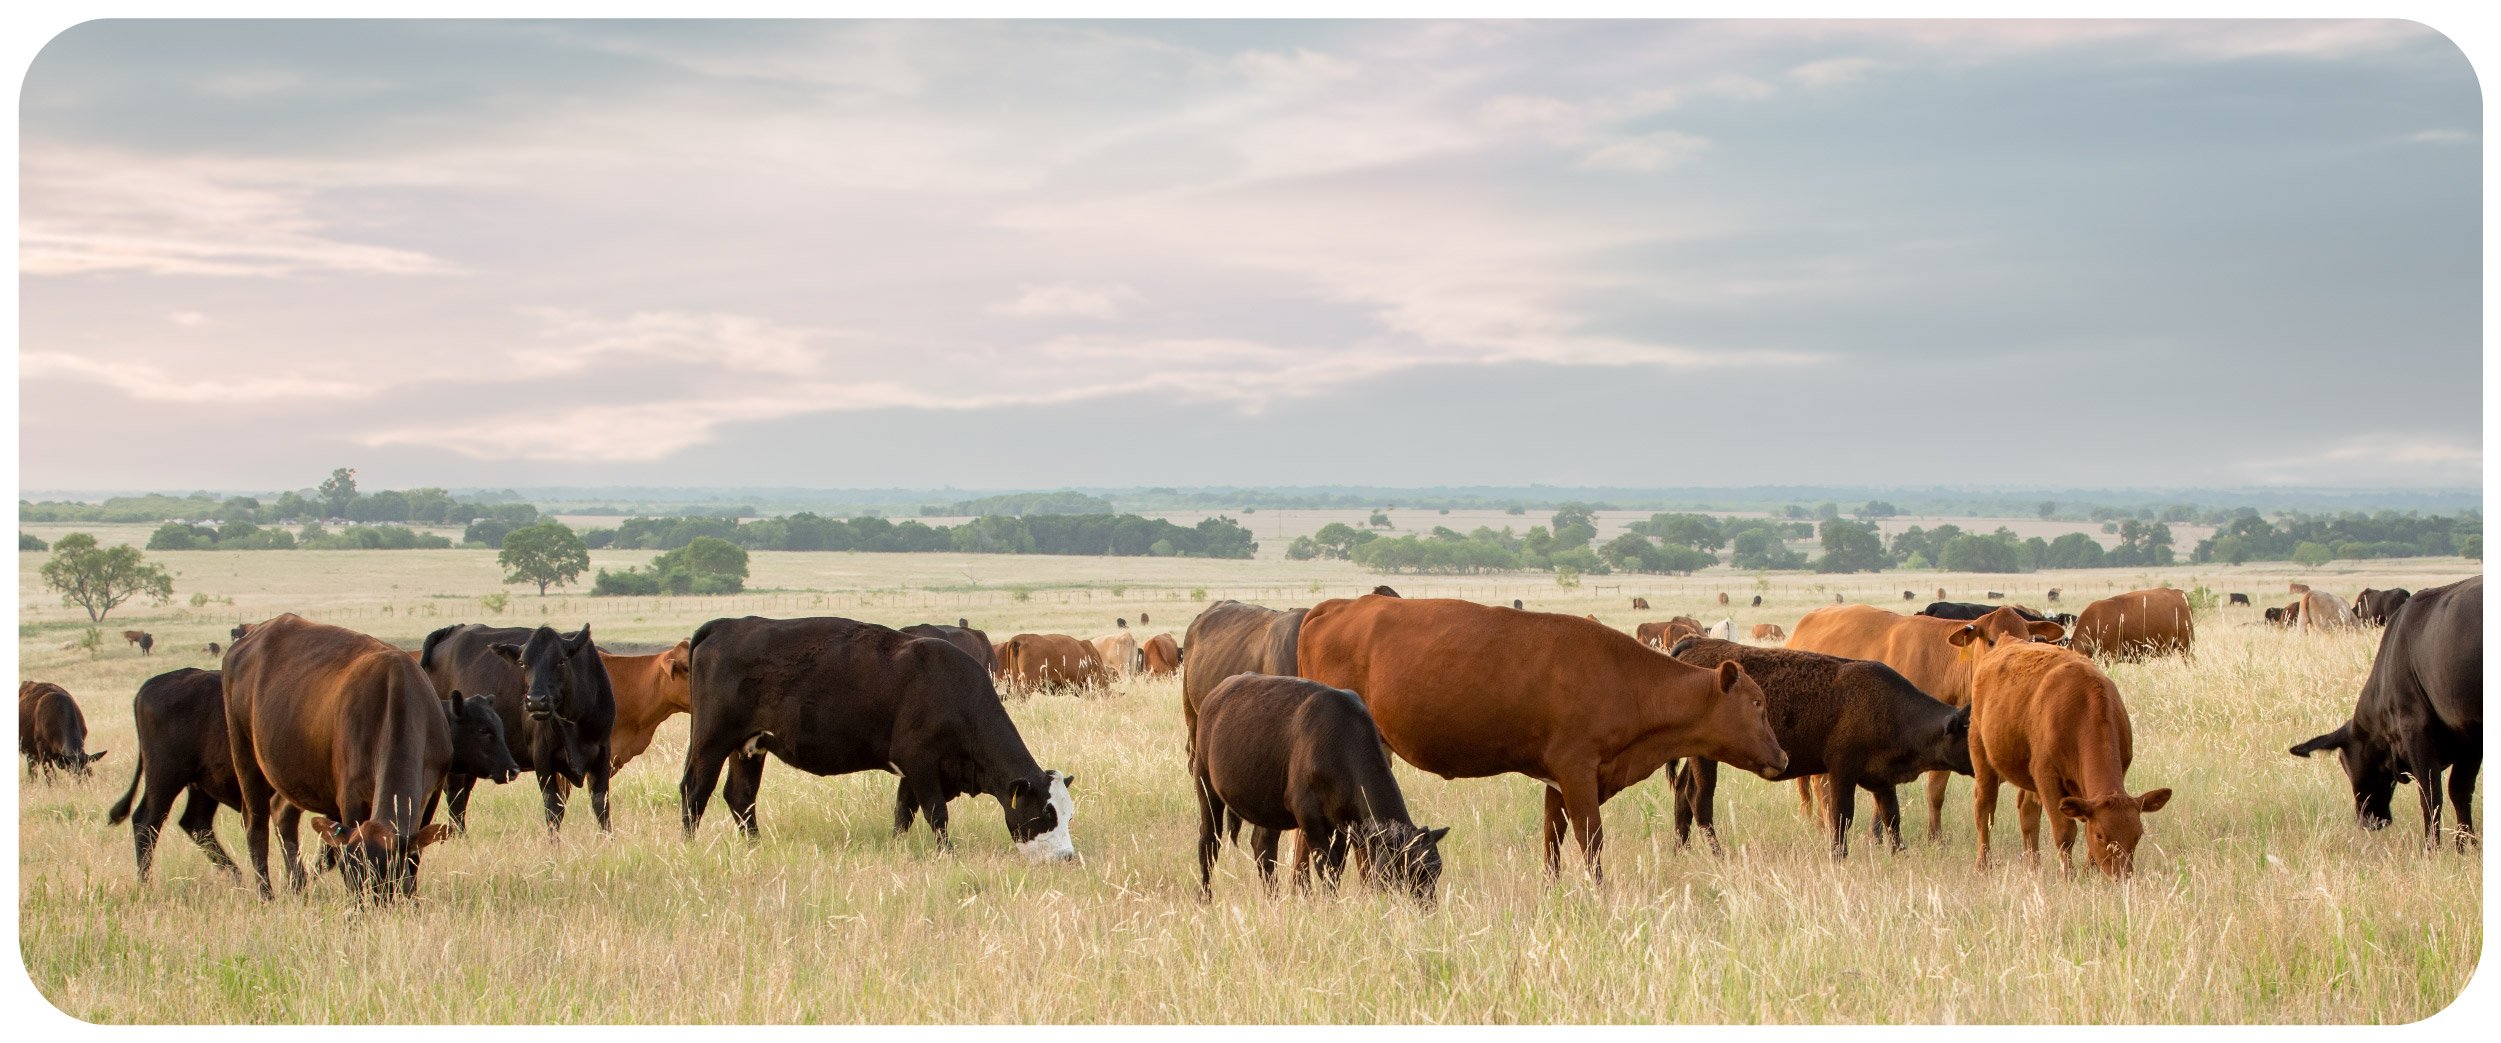 herd of cattle in open field